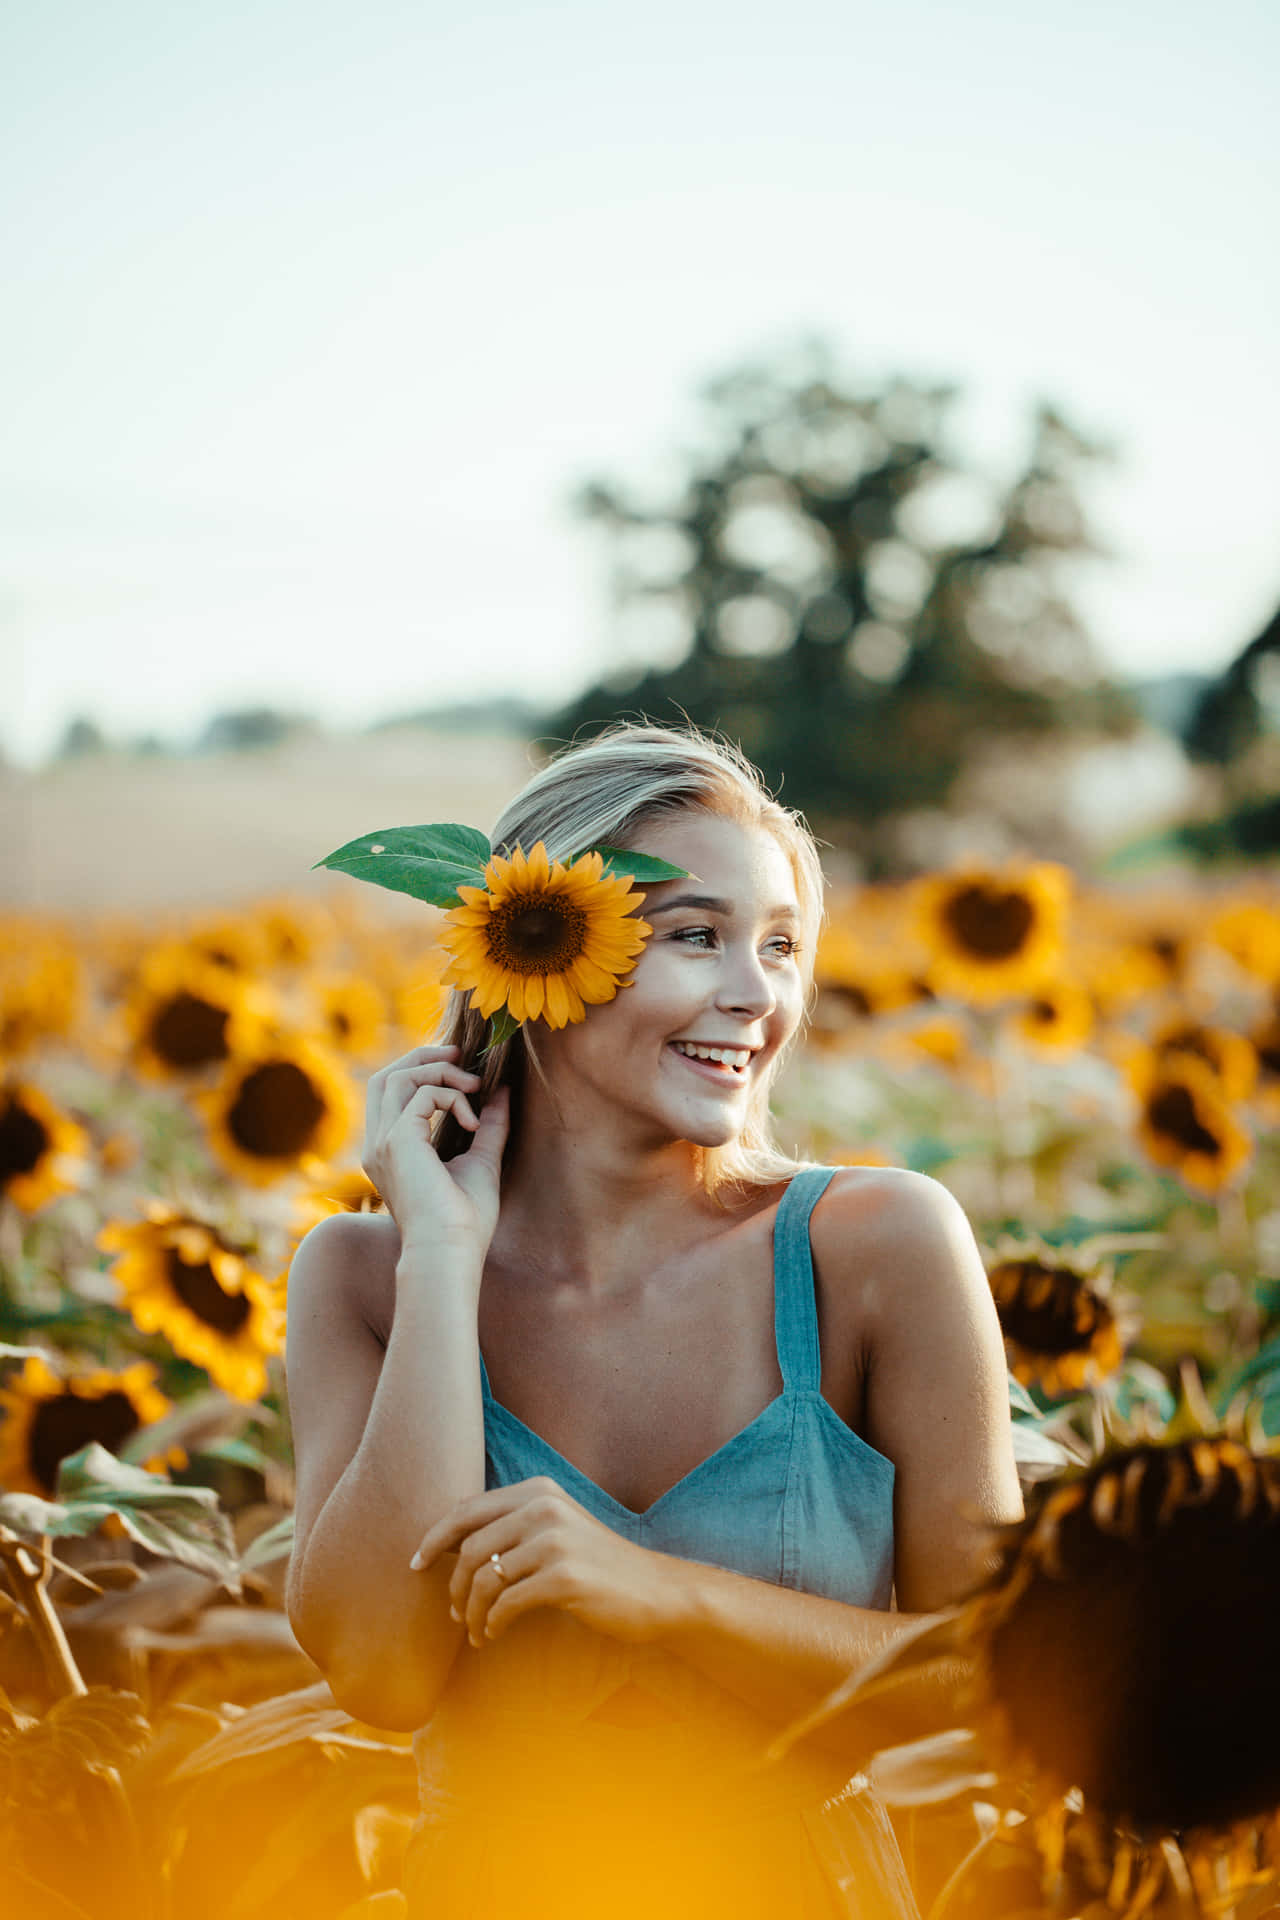 Einefrau Lächelt In Einem Sonnenblumenfeld.